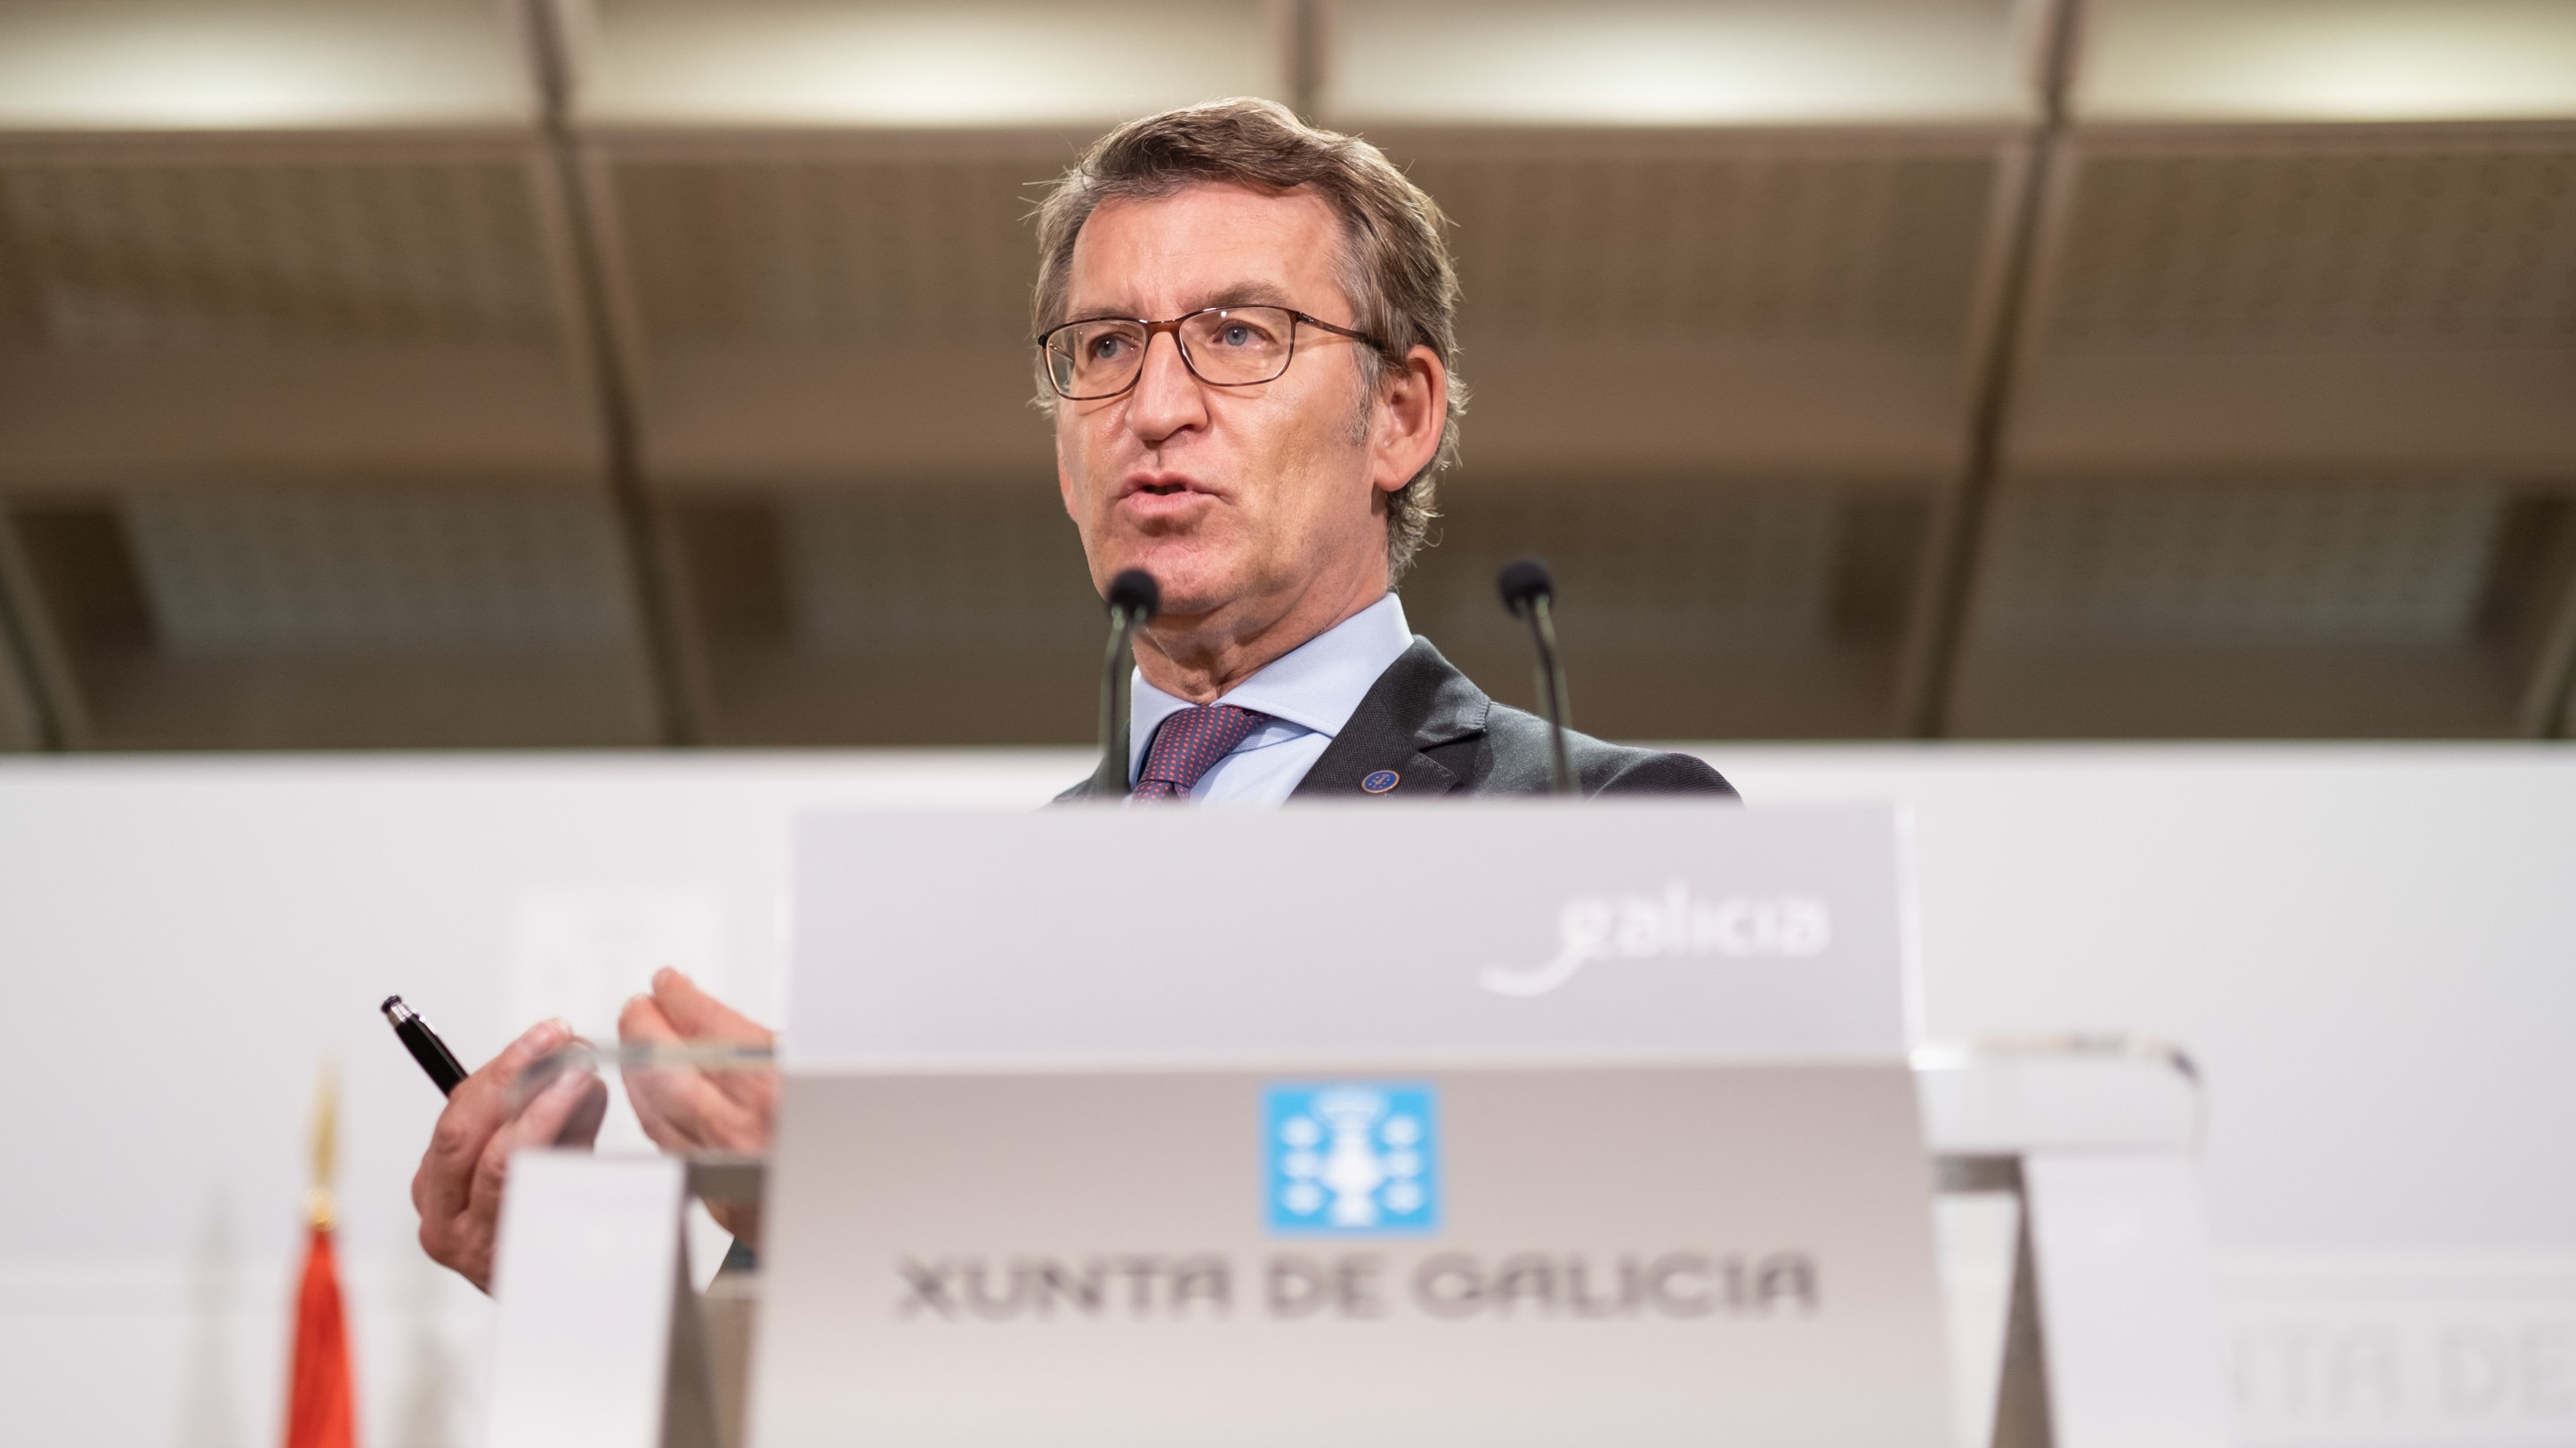 El Supremo obliga al Gobierno a ingresar a Galicia la liquidación del IVA de 2017